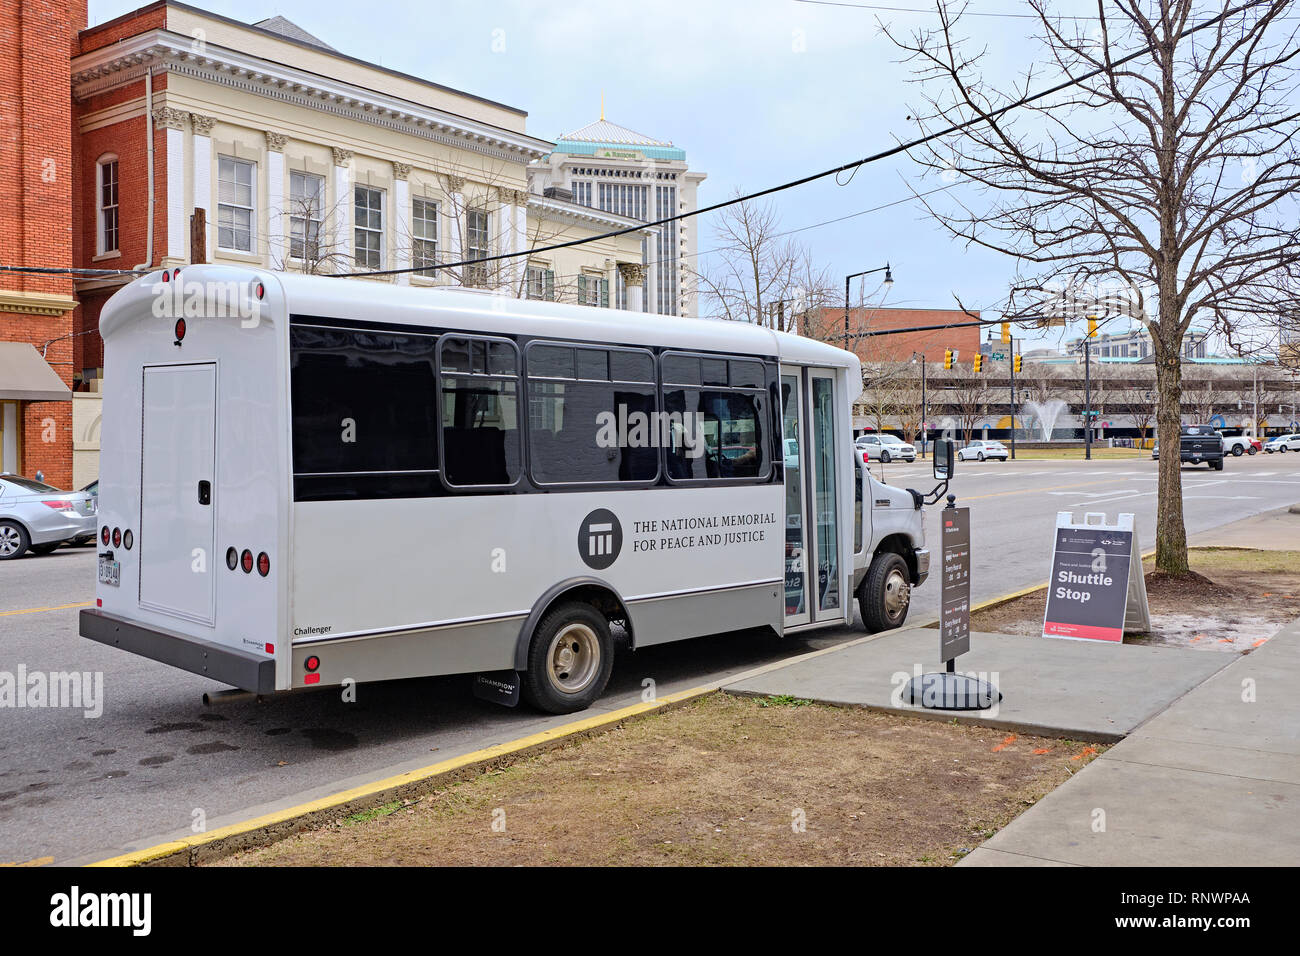 Kleine Passagier tour bus für die Nationale Gedenkstätte für Frieden und Gerechtigkeit eine Bürgerrechtsorganisation in Montgomery Alabama, USA. Stockfoto